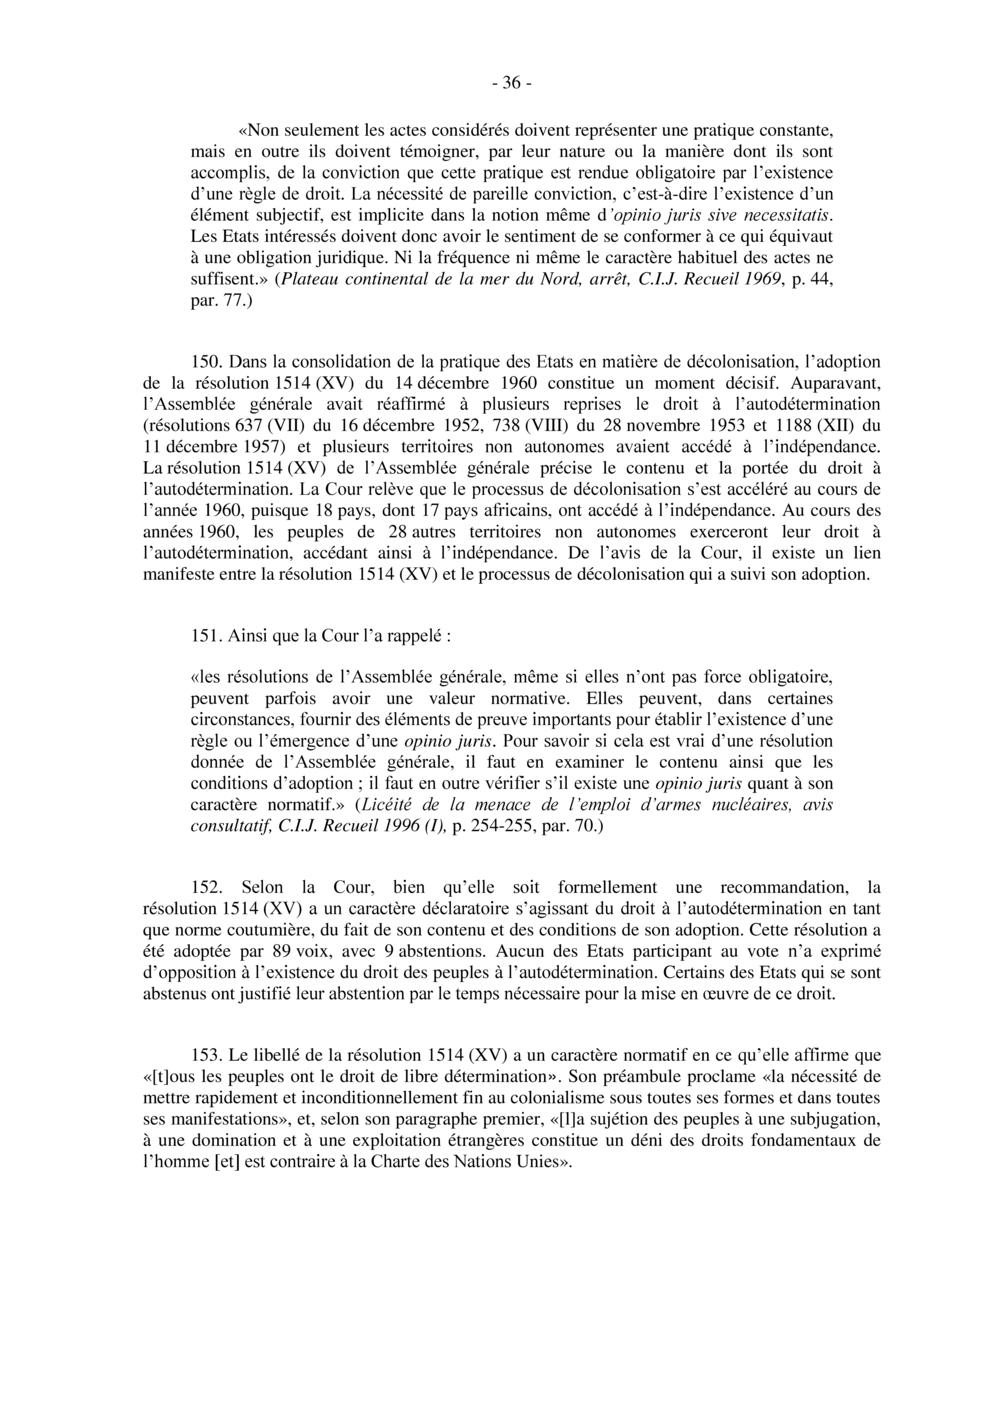 COUR INTERNATIONALE DE JUSTICE - ARCHIPEL DES CHAGOS DE MAURICE